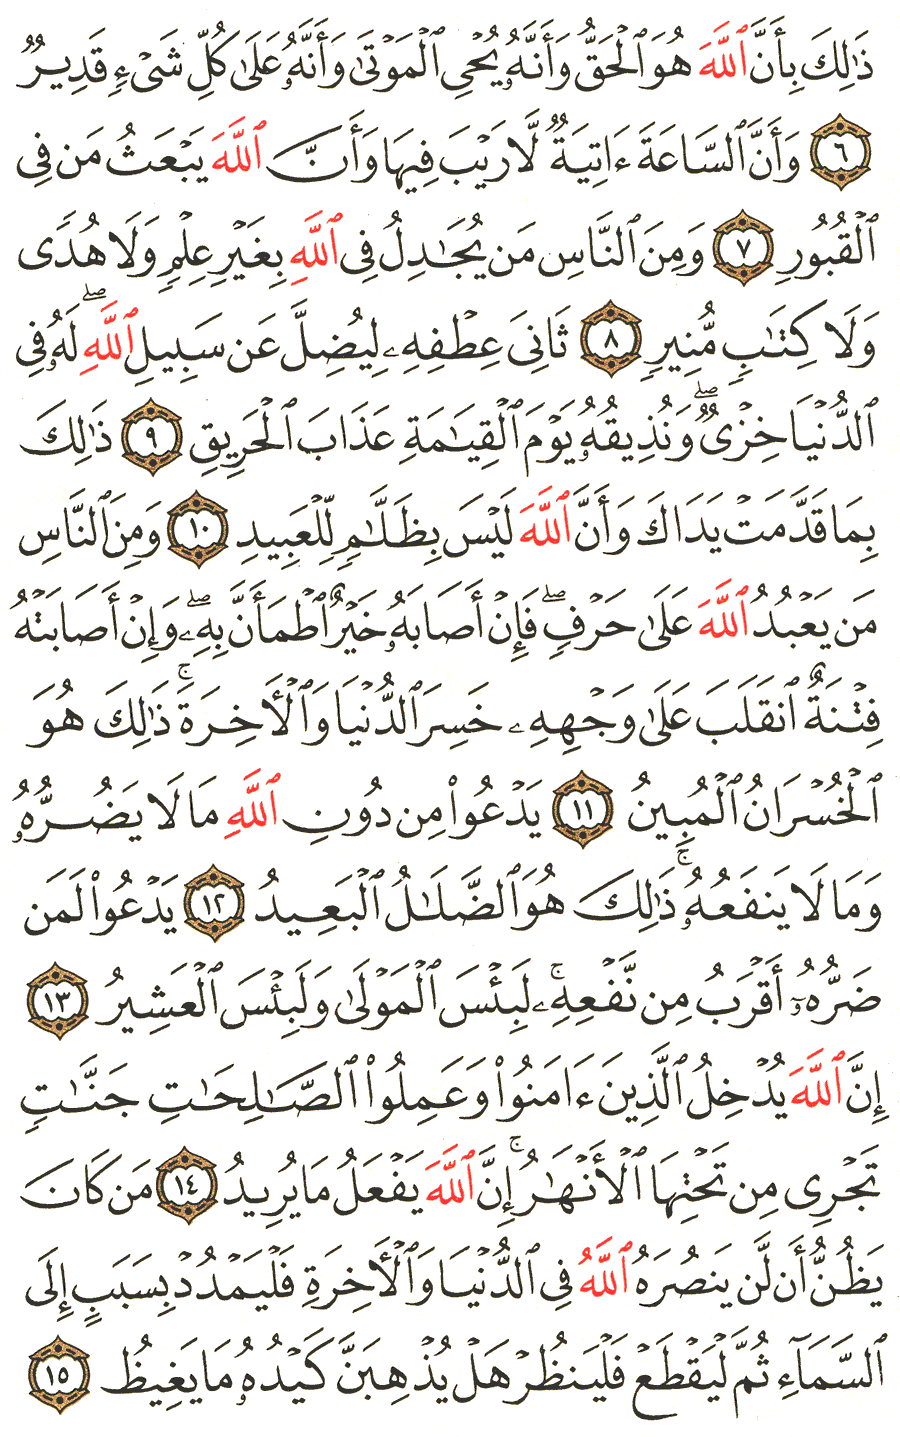 الصفحة رقم 333  من القرآن الكريم مكتوبة من المصحف